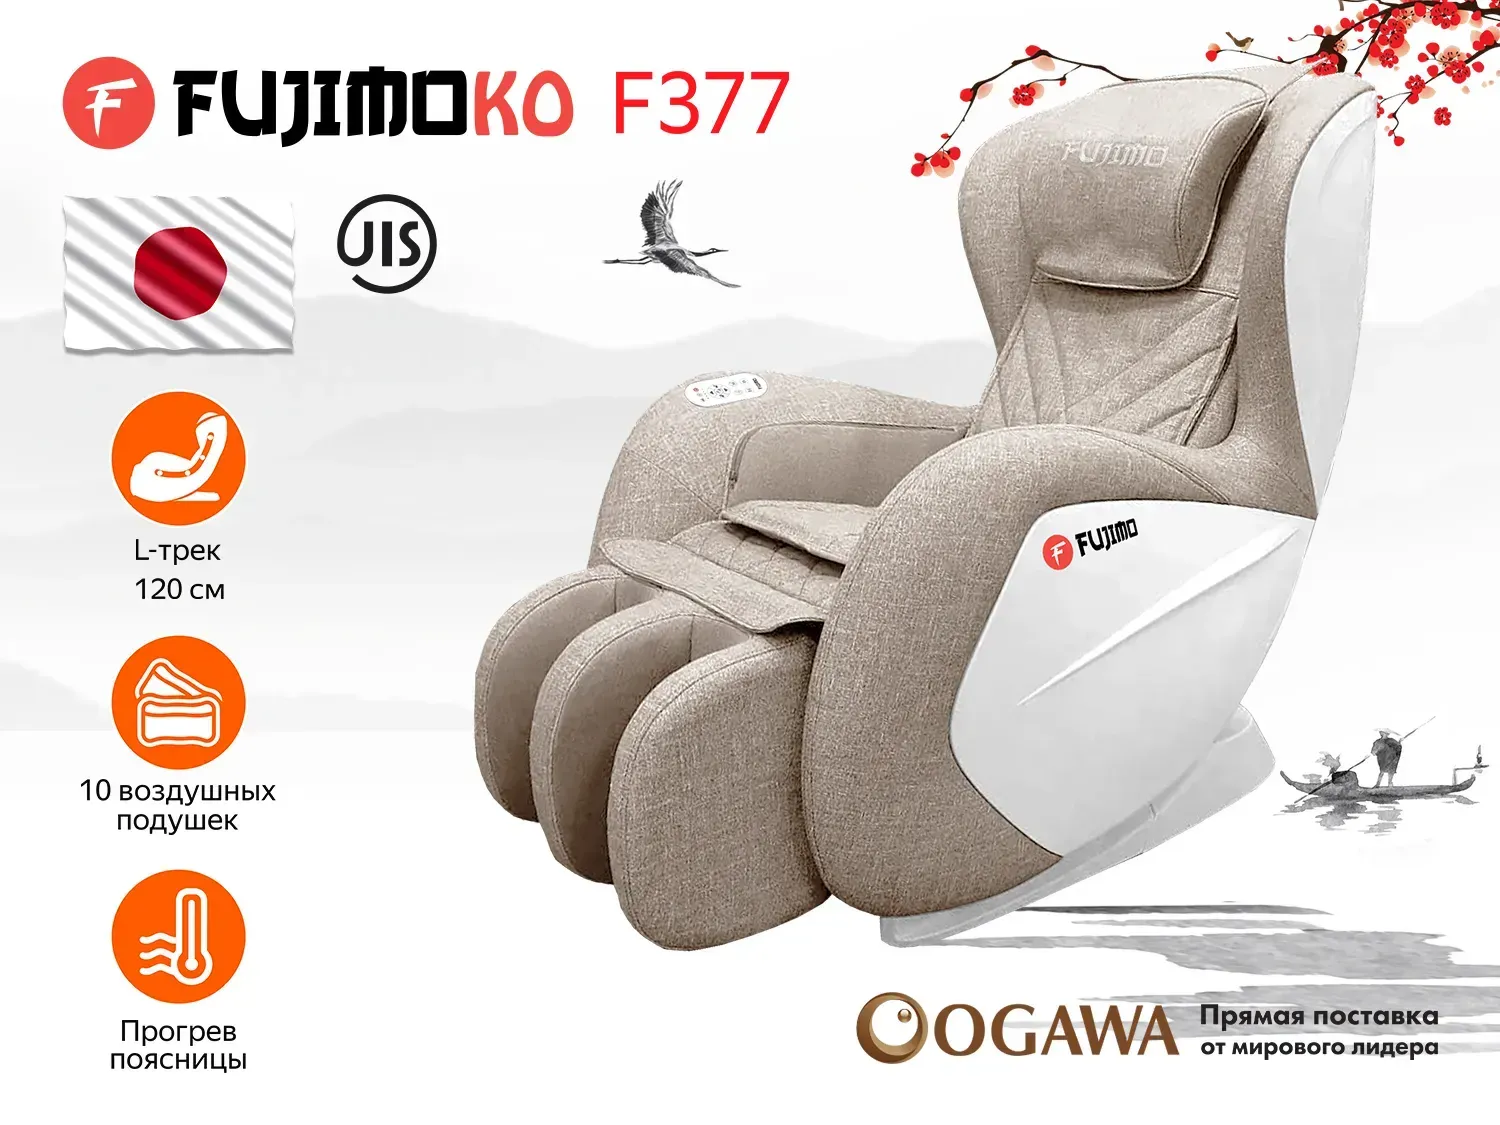 Массажное кресло FUJIMO KO F377 Beige - 1 